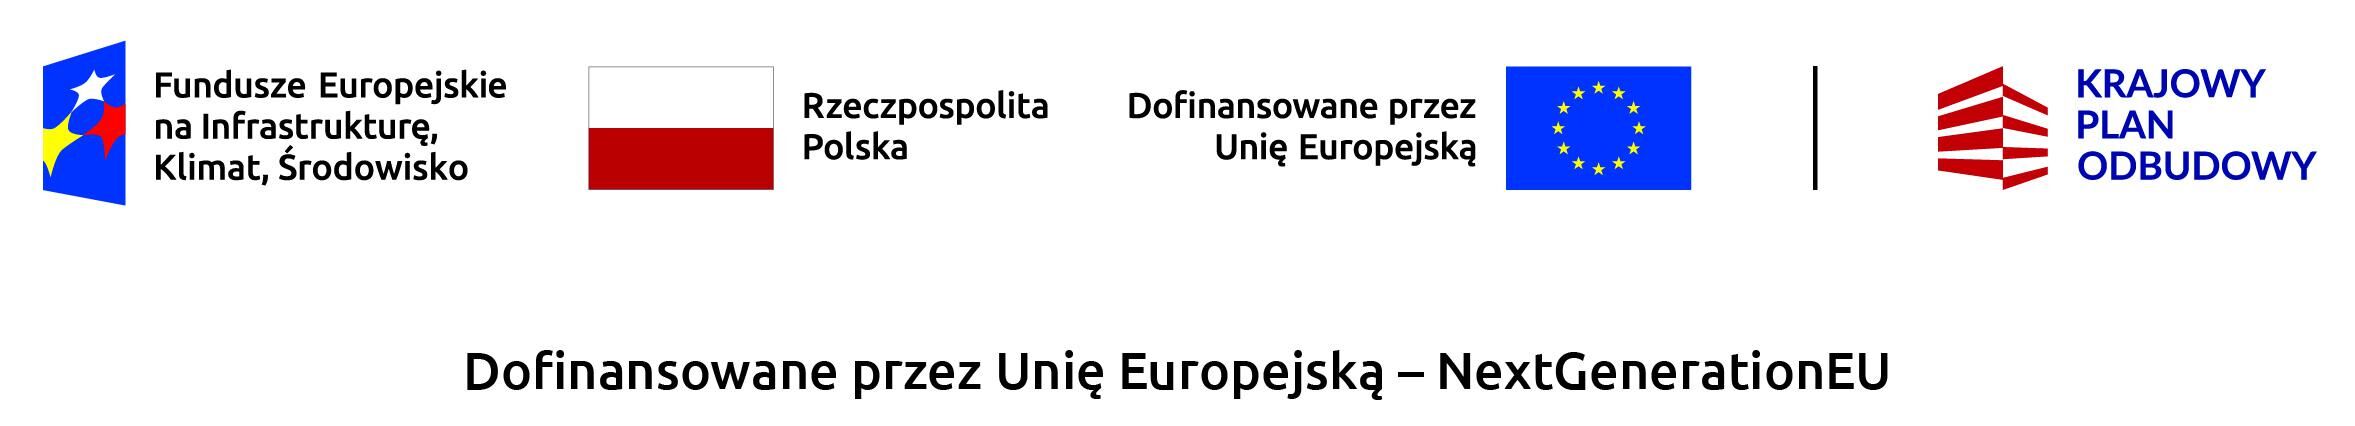 Opis 1: Logo Funduszu Europejskiego na Infrastrukturę, Klimat, Środowisko - niebieski napis na białym tle.Opis 2: Polska flaga - dwa poziome pasy: biały i czerwony.Opis 3: Napis "Dofinansowane przez Unię Europejską" i flaga UE - złote gwiazdy na niebieskim tle.Opis 4: Logo "KRAJOWY PLAN ODBUDOWY" - czarne litery i polskie barwy.